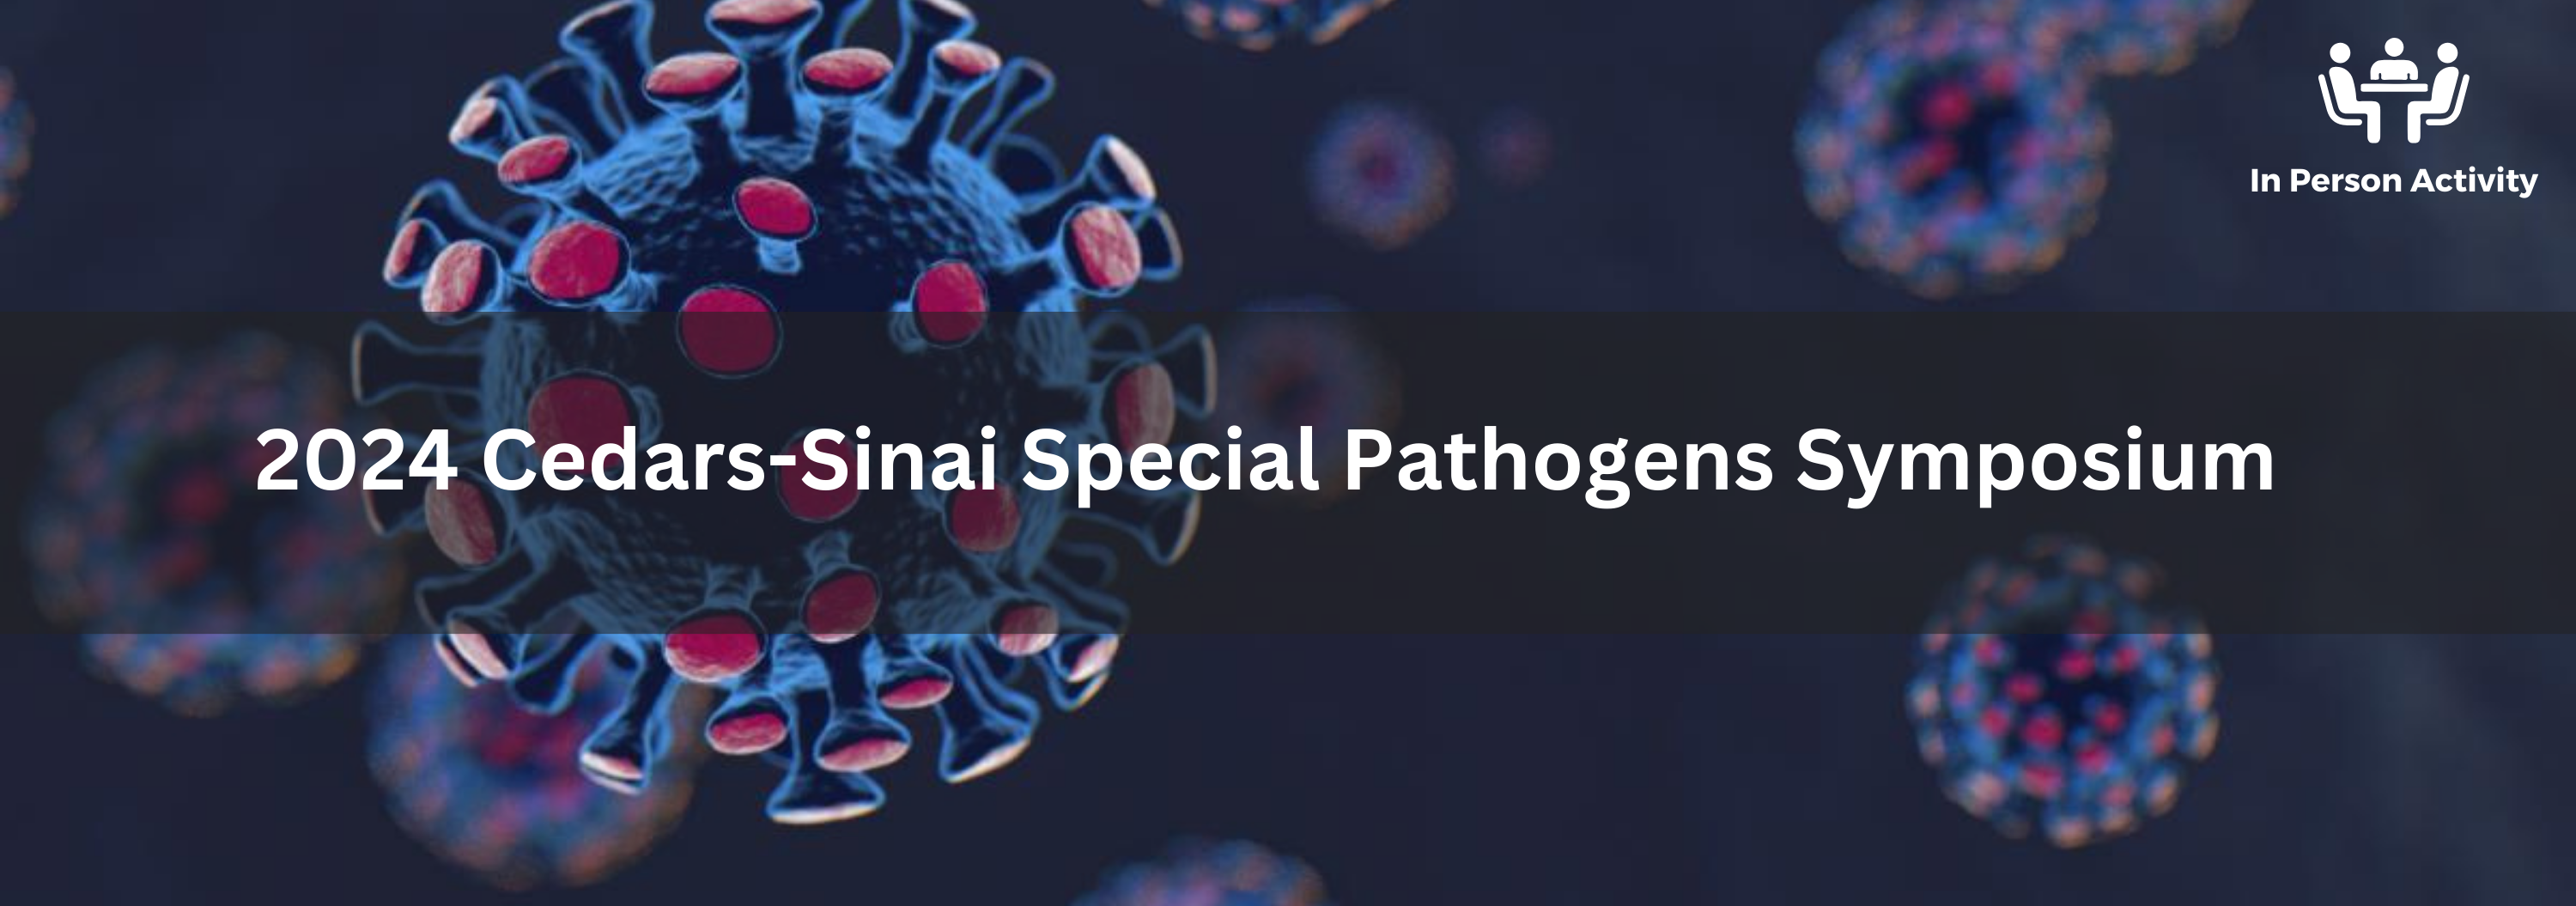 2024 Cedars-Sinai Special Pathogens Symposium Banner